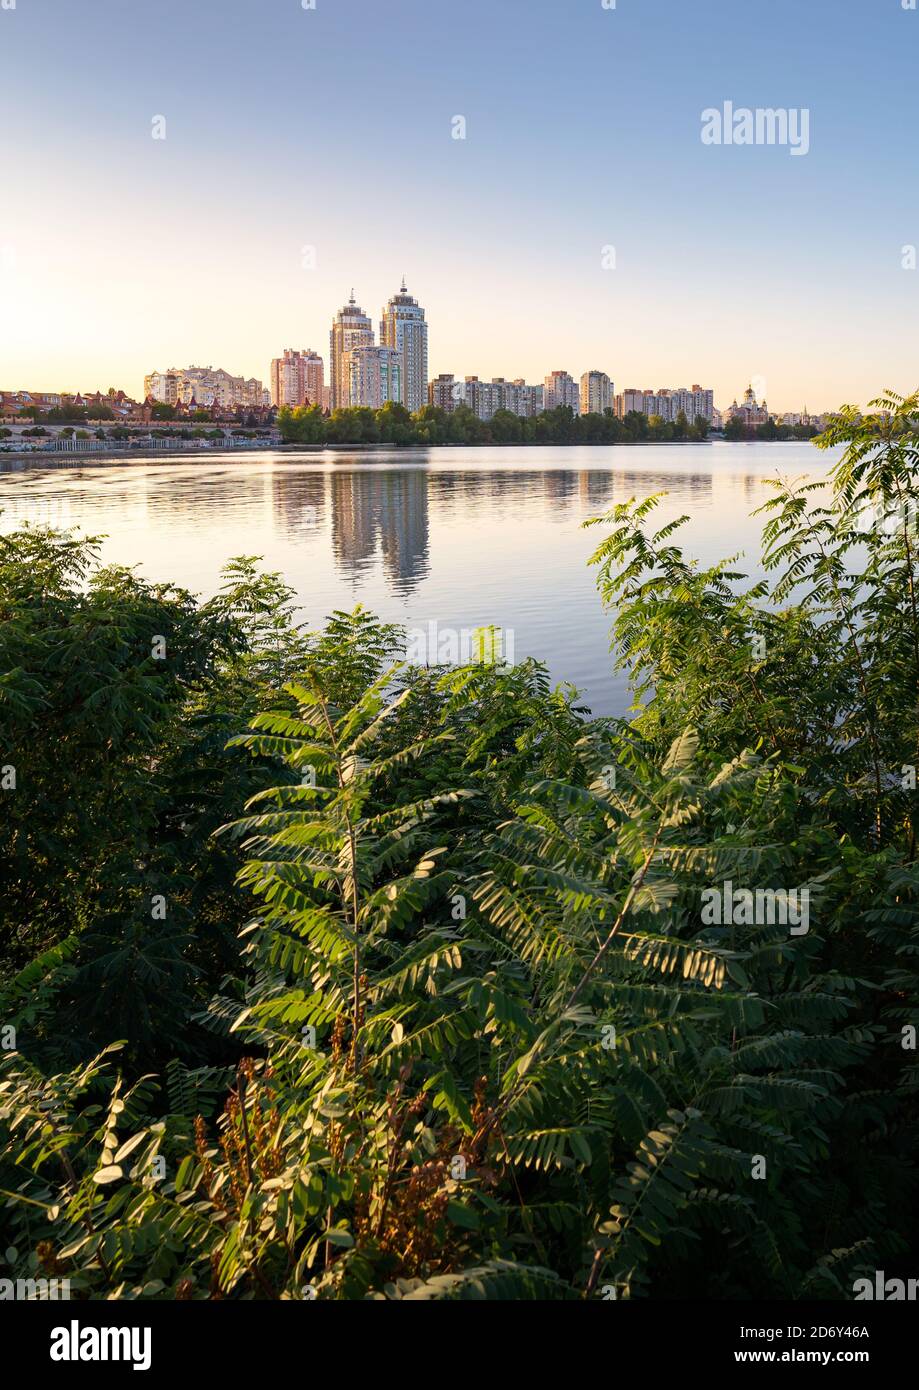 Edifici alti Obolon vicino al fiume Dnieper a Kiev, Ucraina. Cielo blu chiaro e riflessione in acqua. Varie piante e vegetazione nello straniero Foto Stock